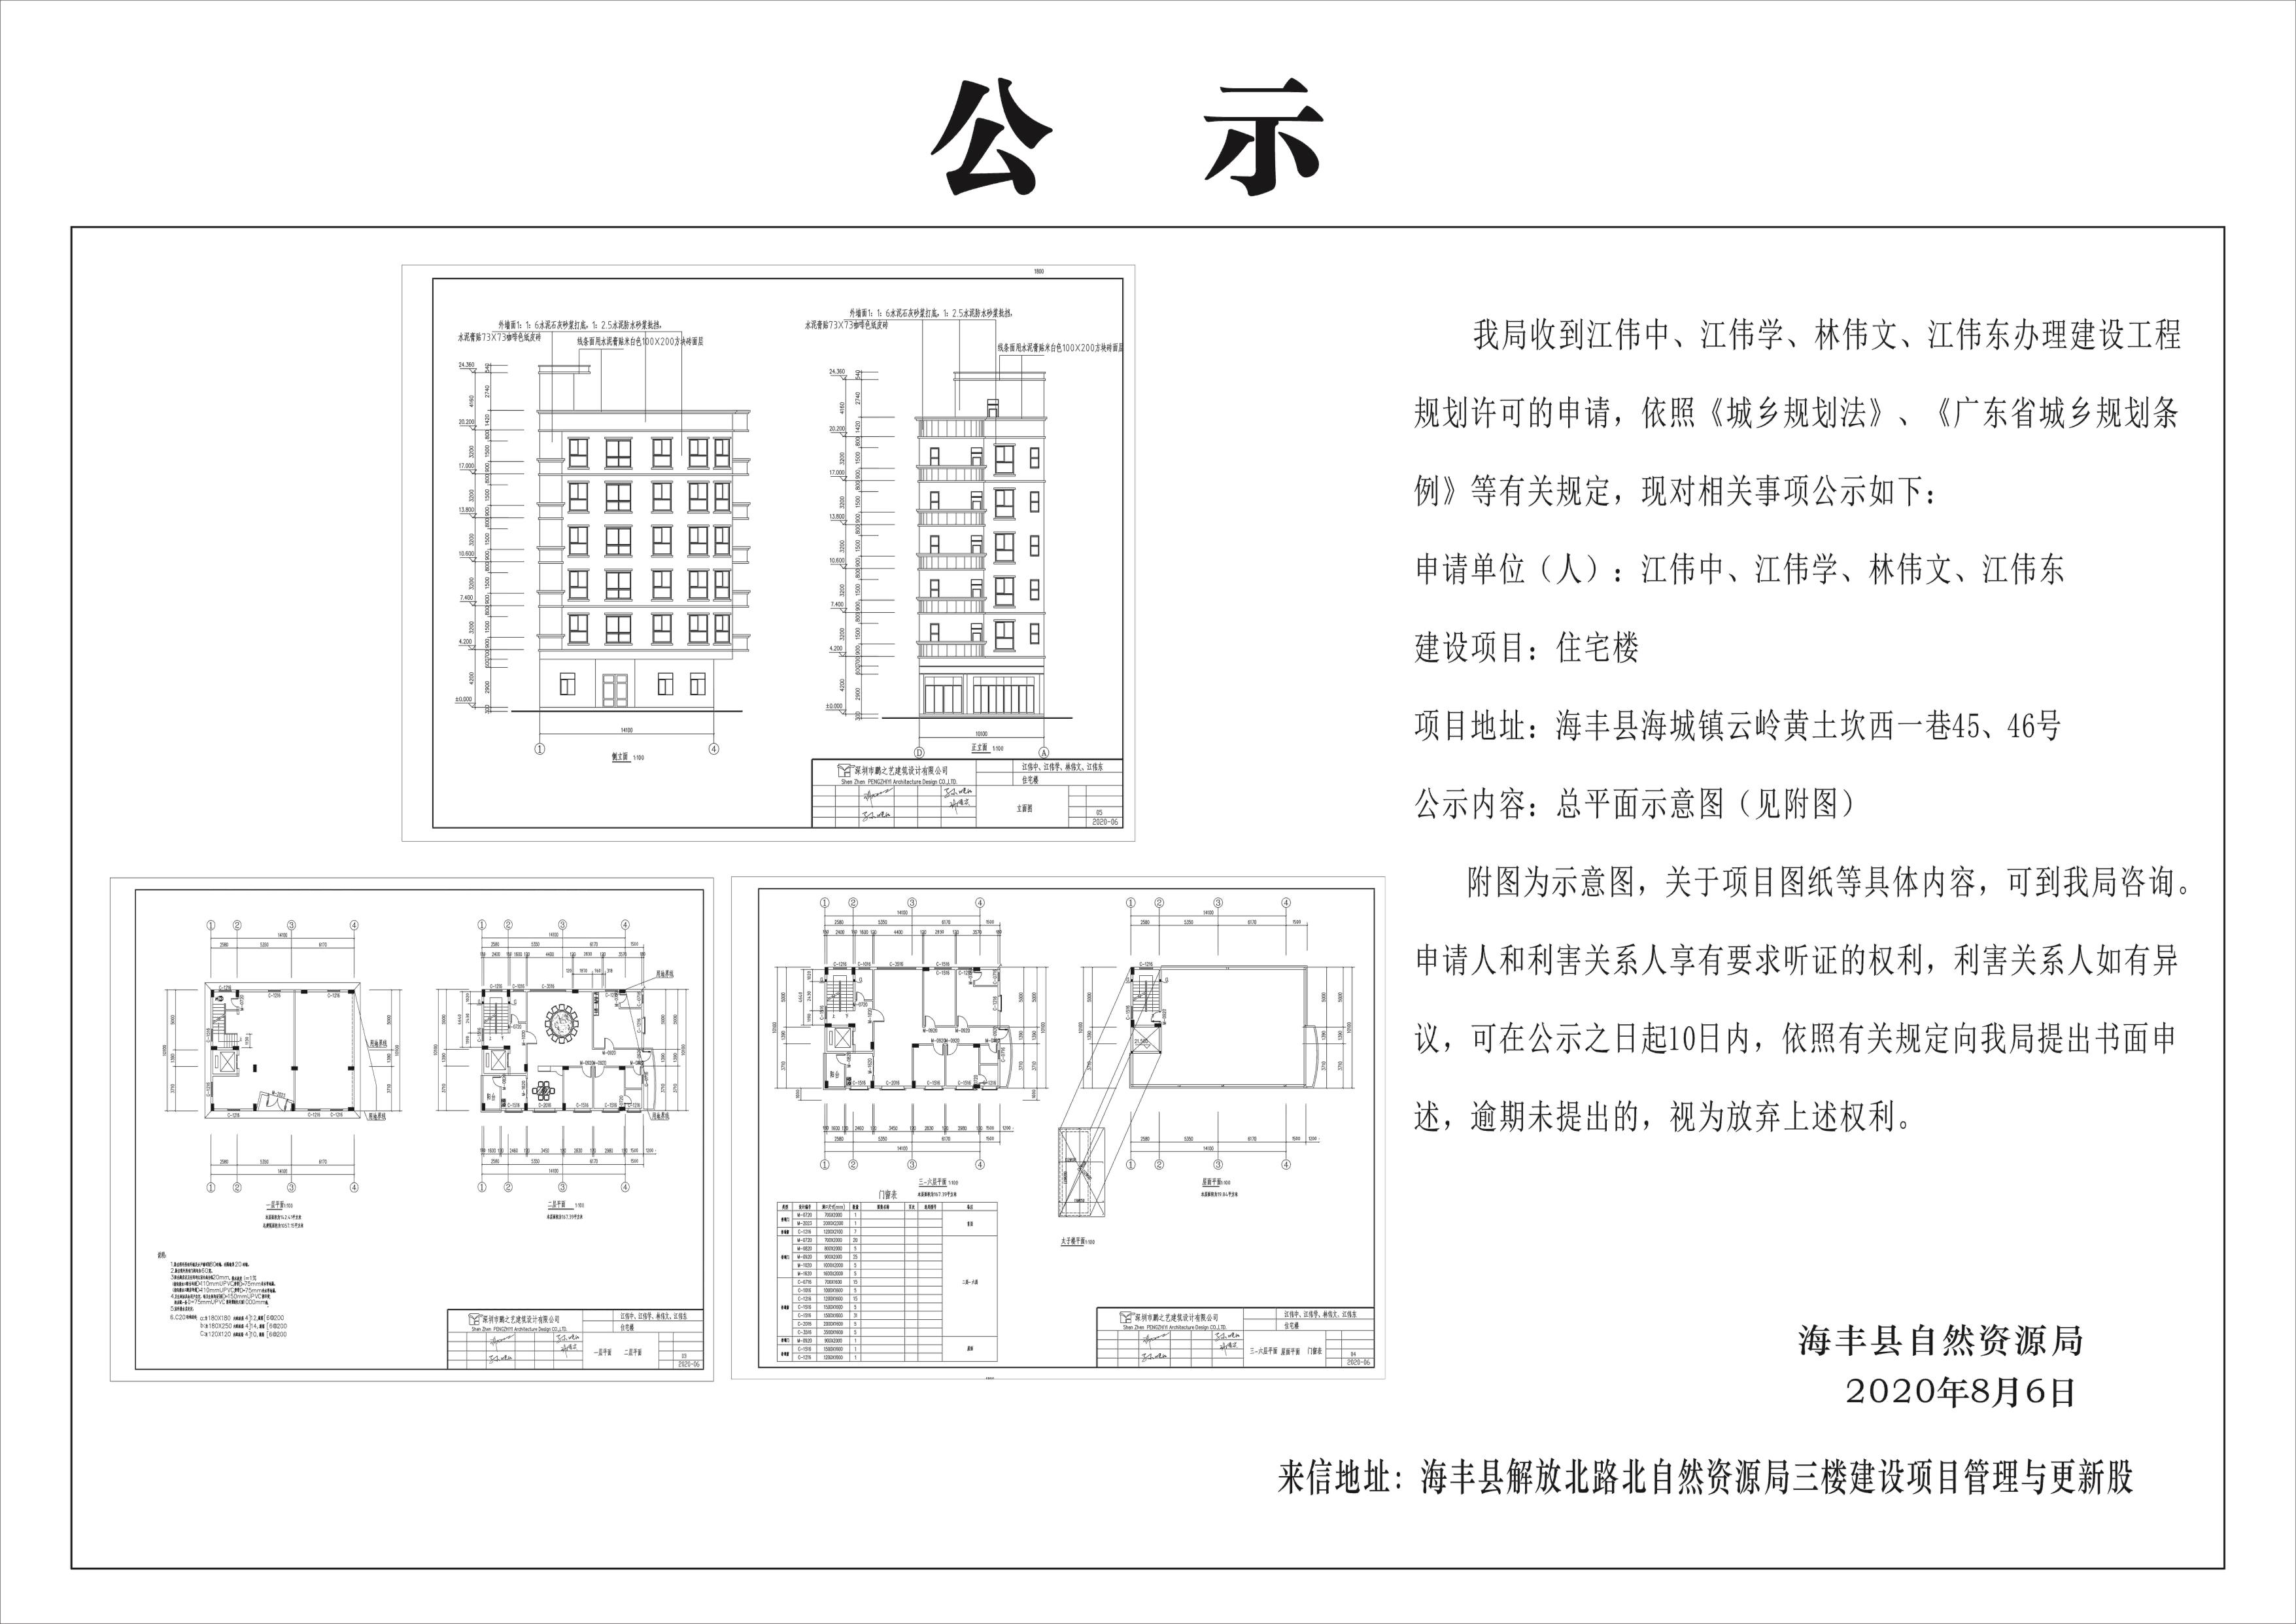 规划总平面图_上海新天地平面规划_长沙市规划馆平面分析